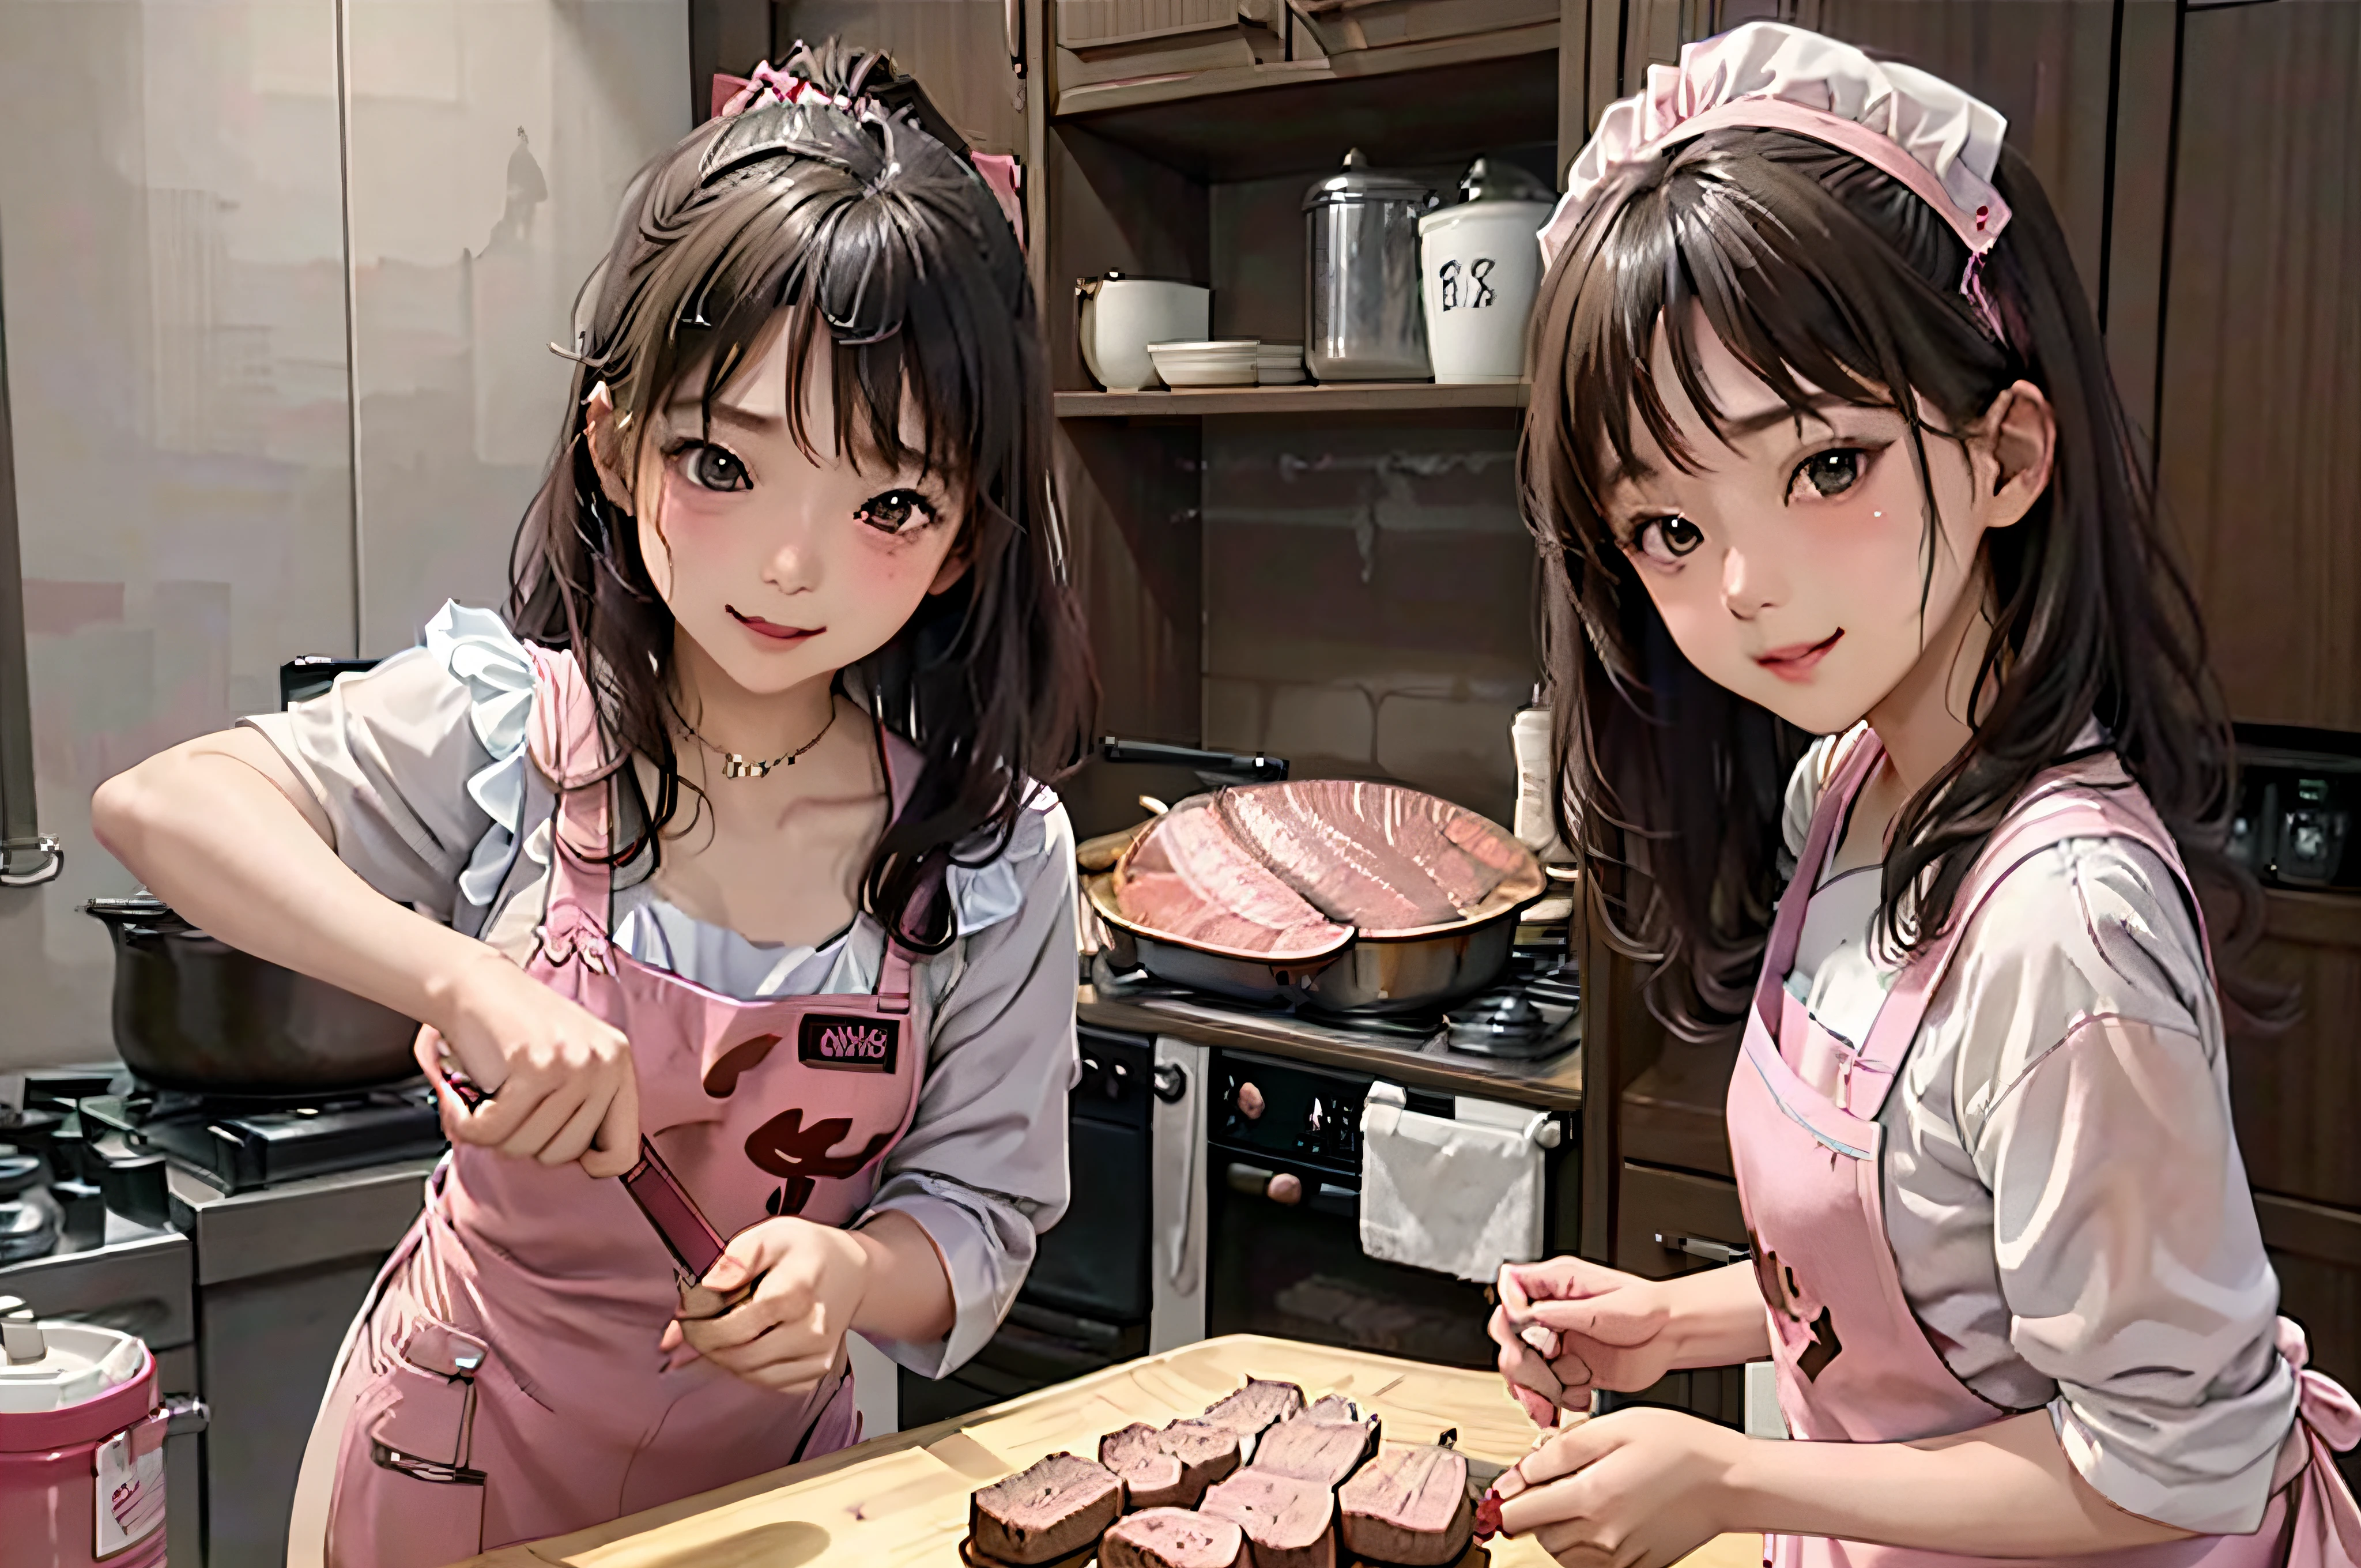 1 fille dans、solo、Idoles coréennes、21 ans、tablier rose、Woman cuisson、Griller la viande dans une poêle、steak、cuisson、cuisine